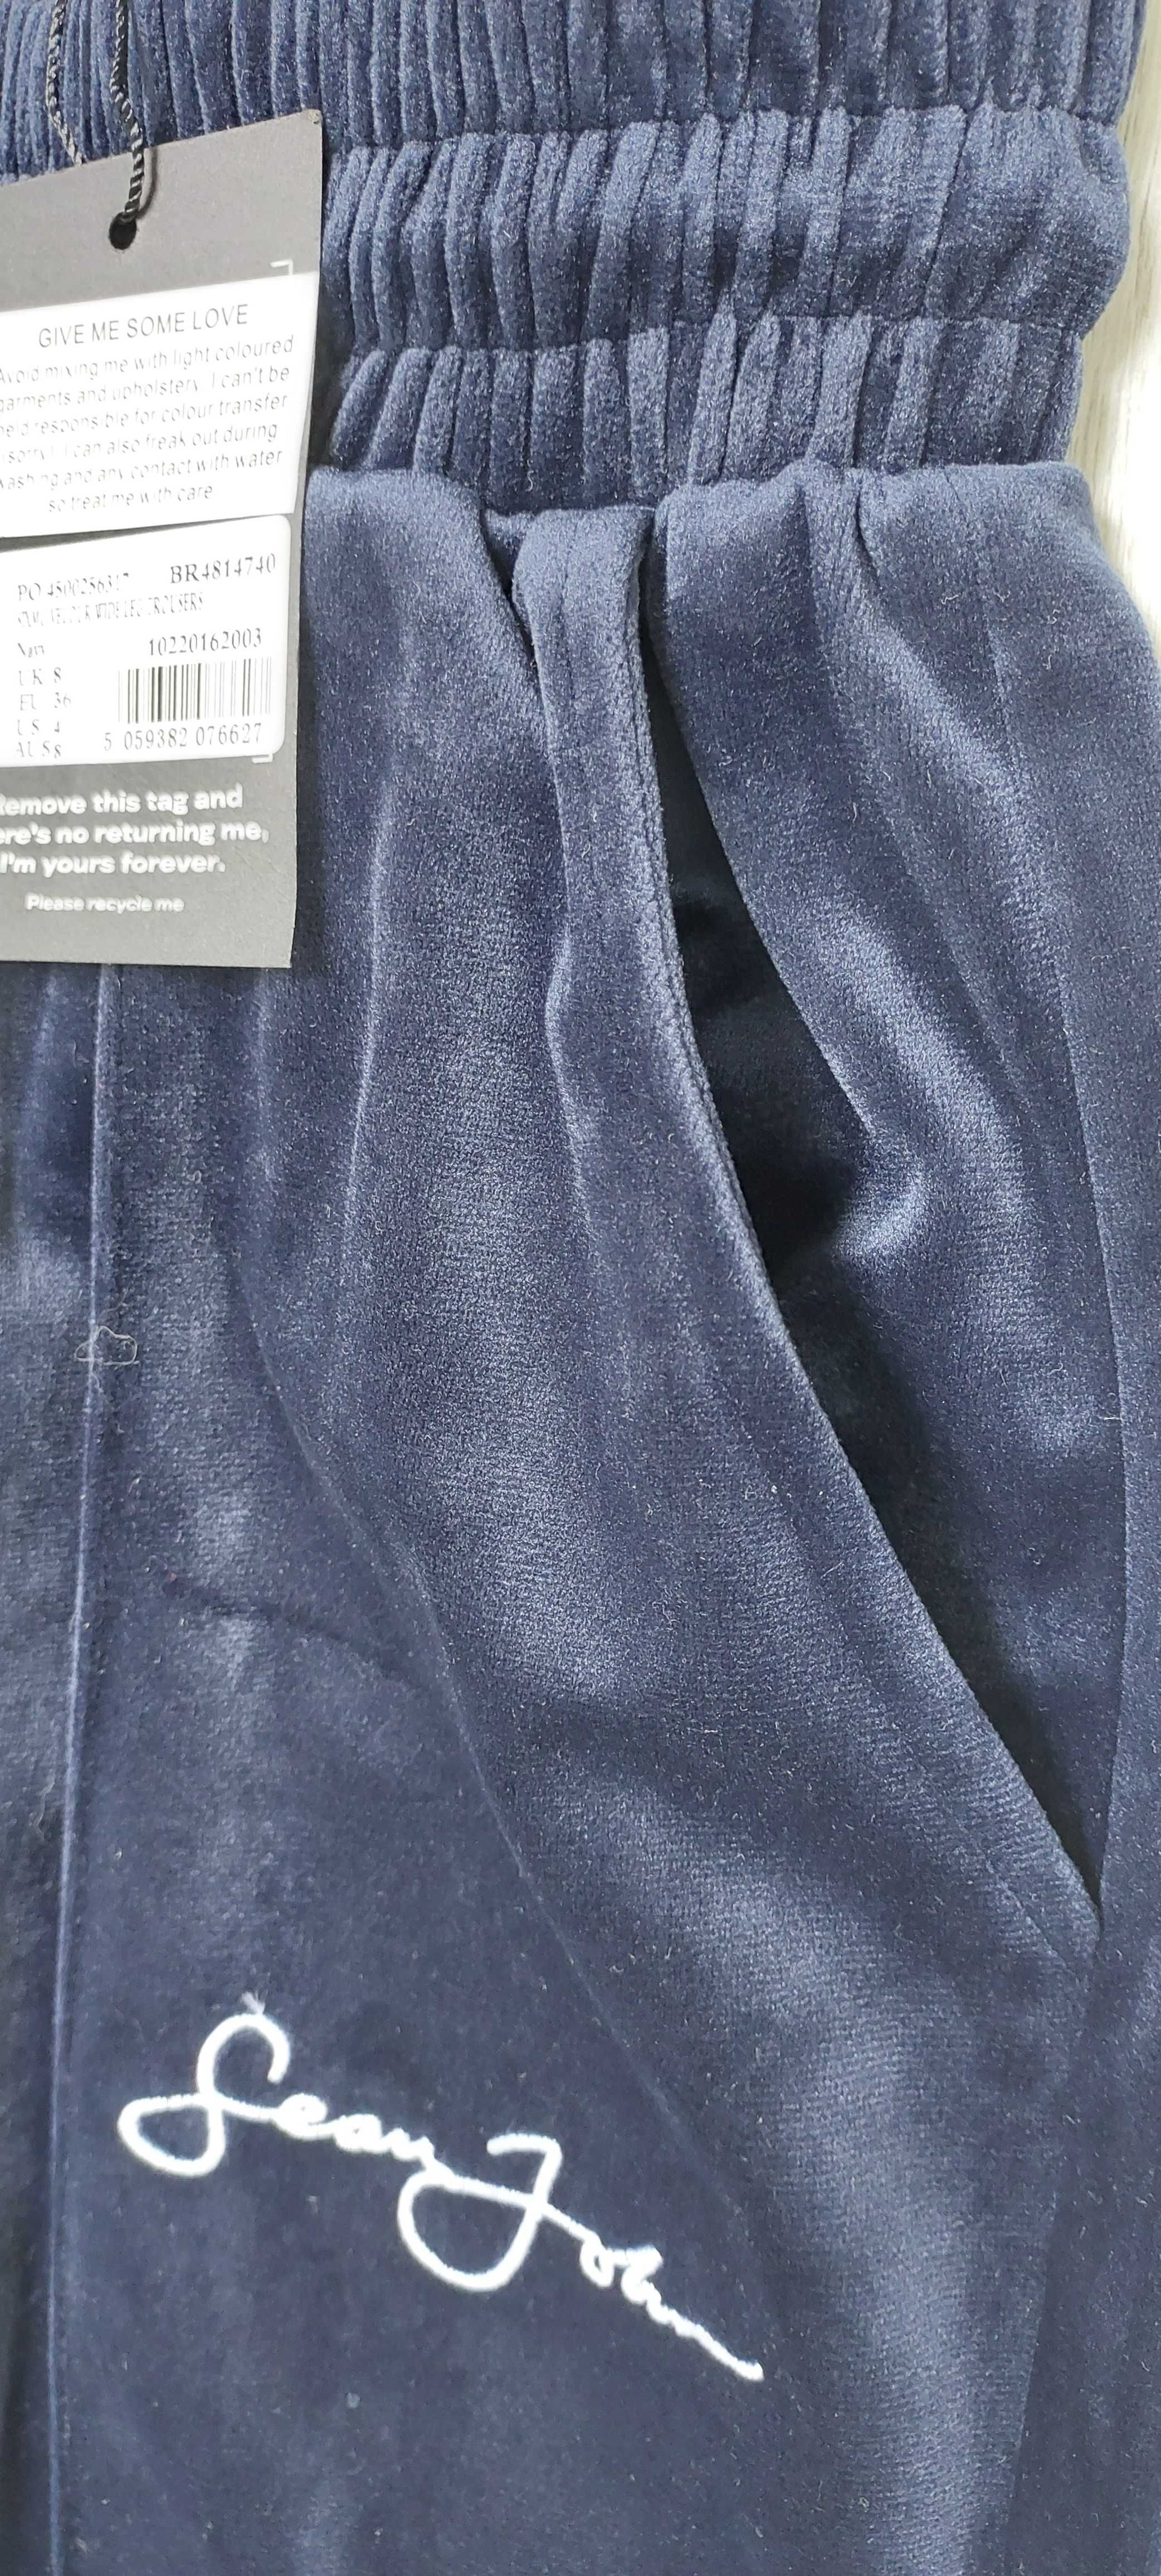 Spodnie dresowe z szerokimi nogawkami MISSGUIDED SEAN JOHN, R. 36